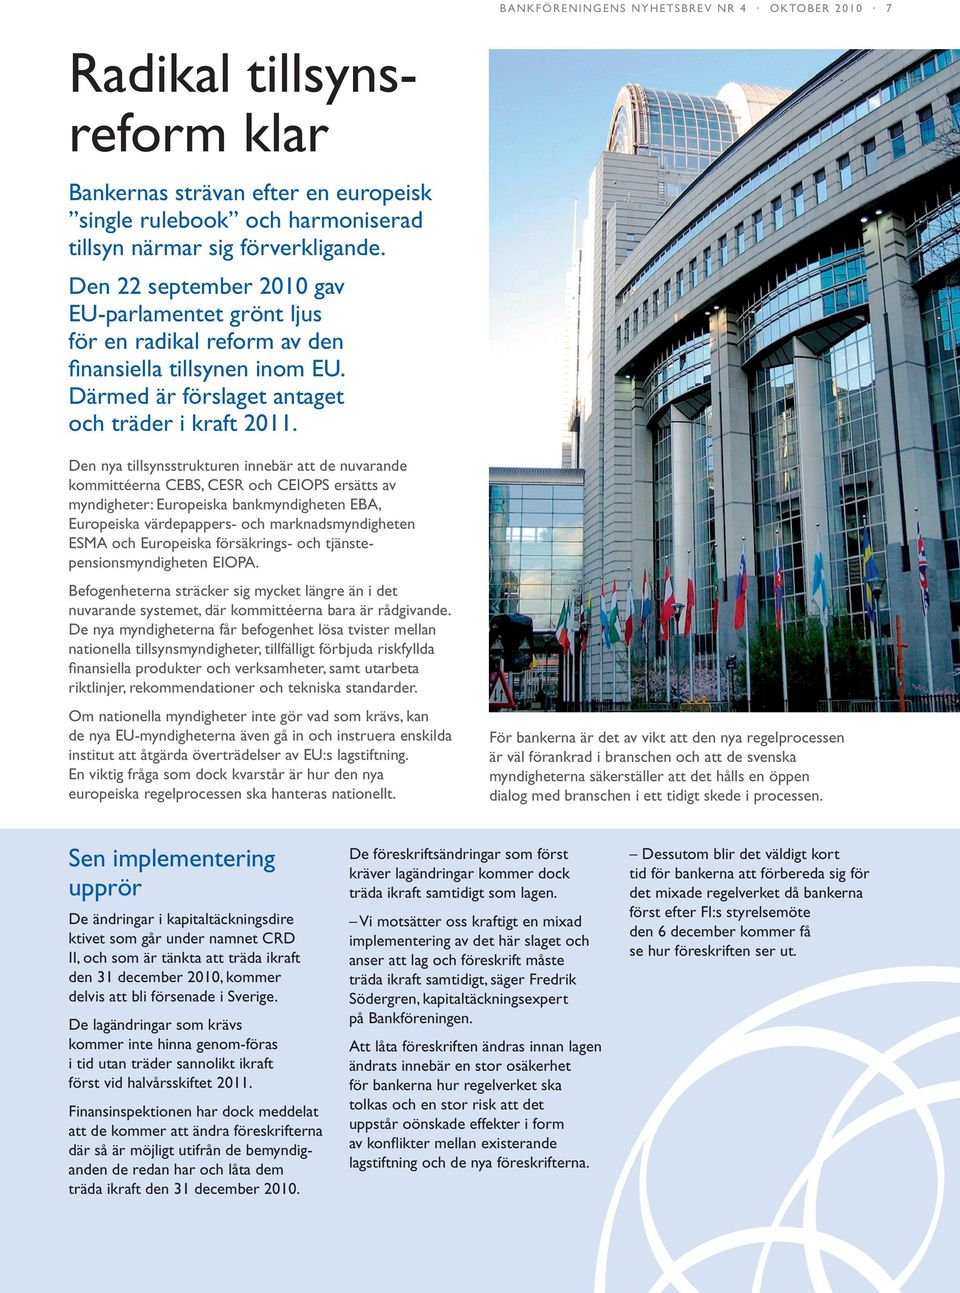 Den nya tillsynsstrukturen innebär att de nuvarande kommittéerna CEBS, CESR och CEIOPS ersätts av myndigheter: Europeiska bankmyndigheten EBA, Europeiska värdepappers- och marknadsmyndigheten ESMA